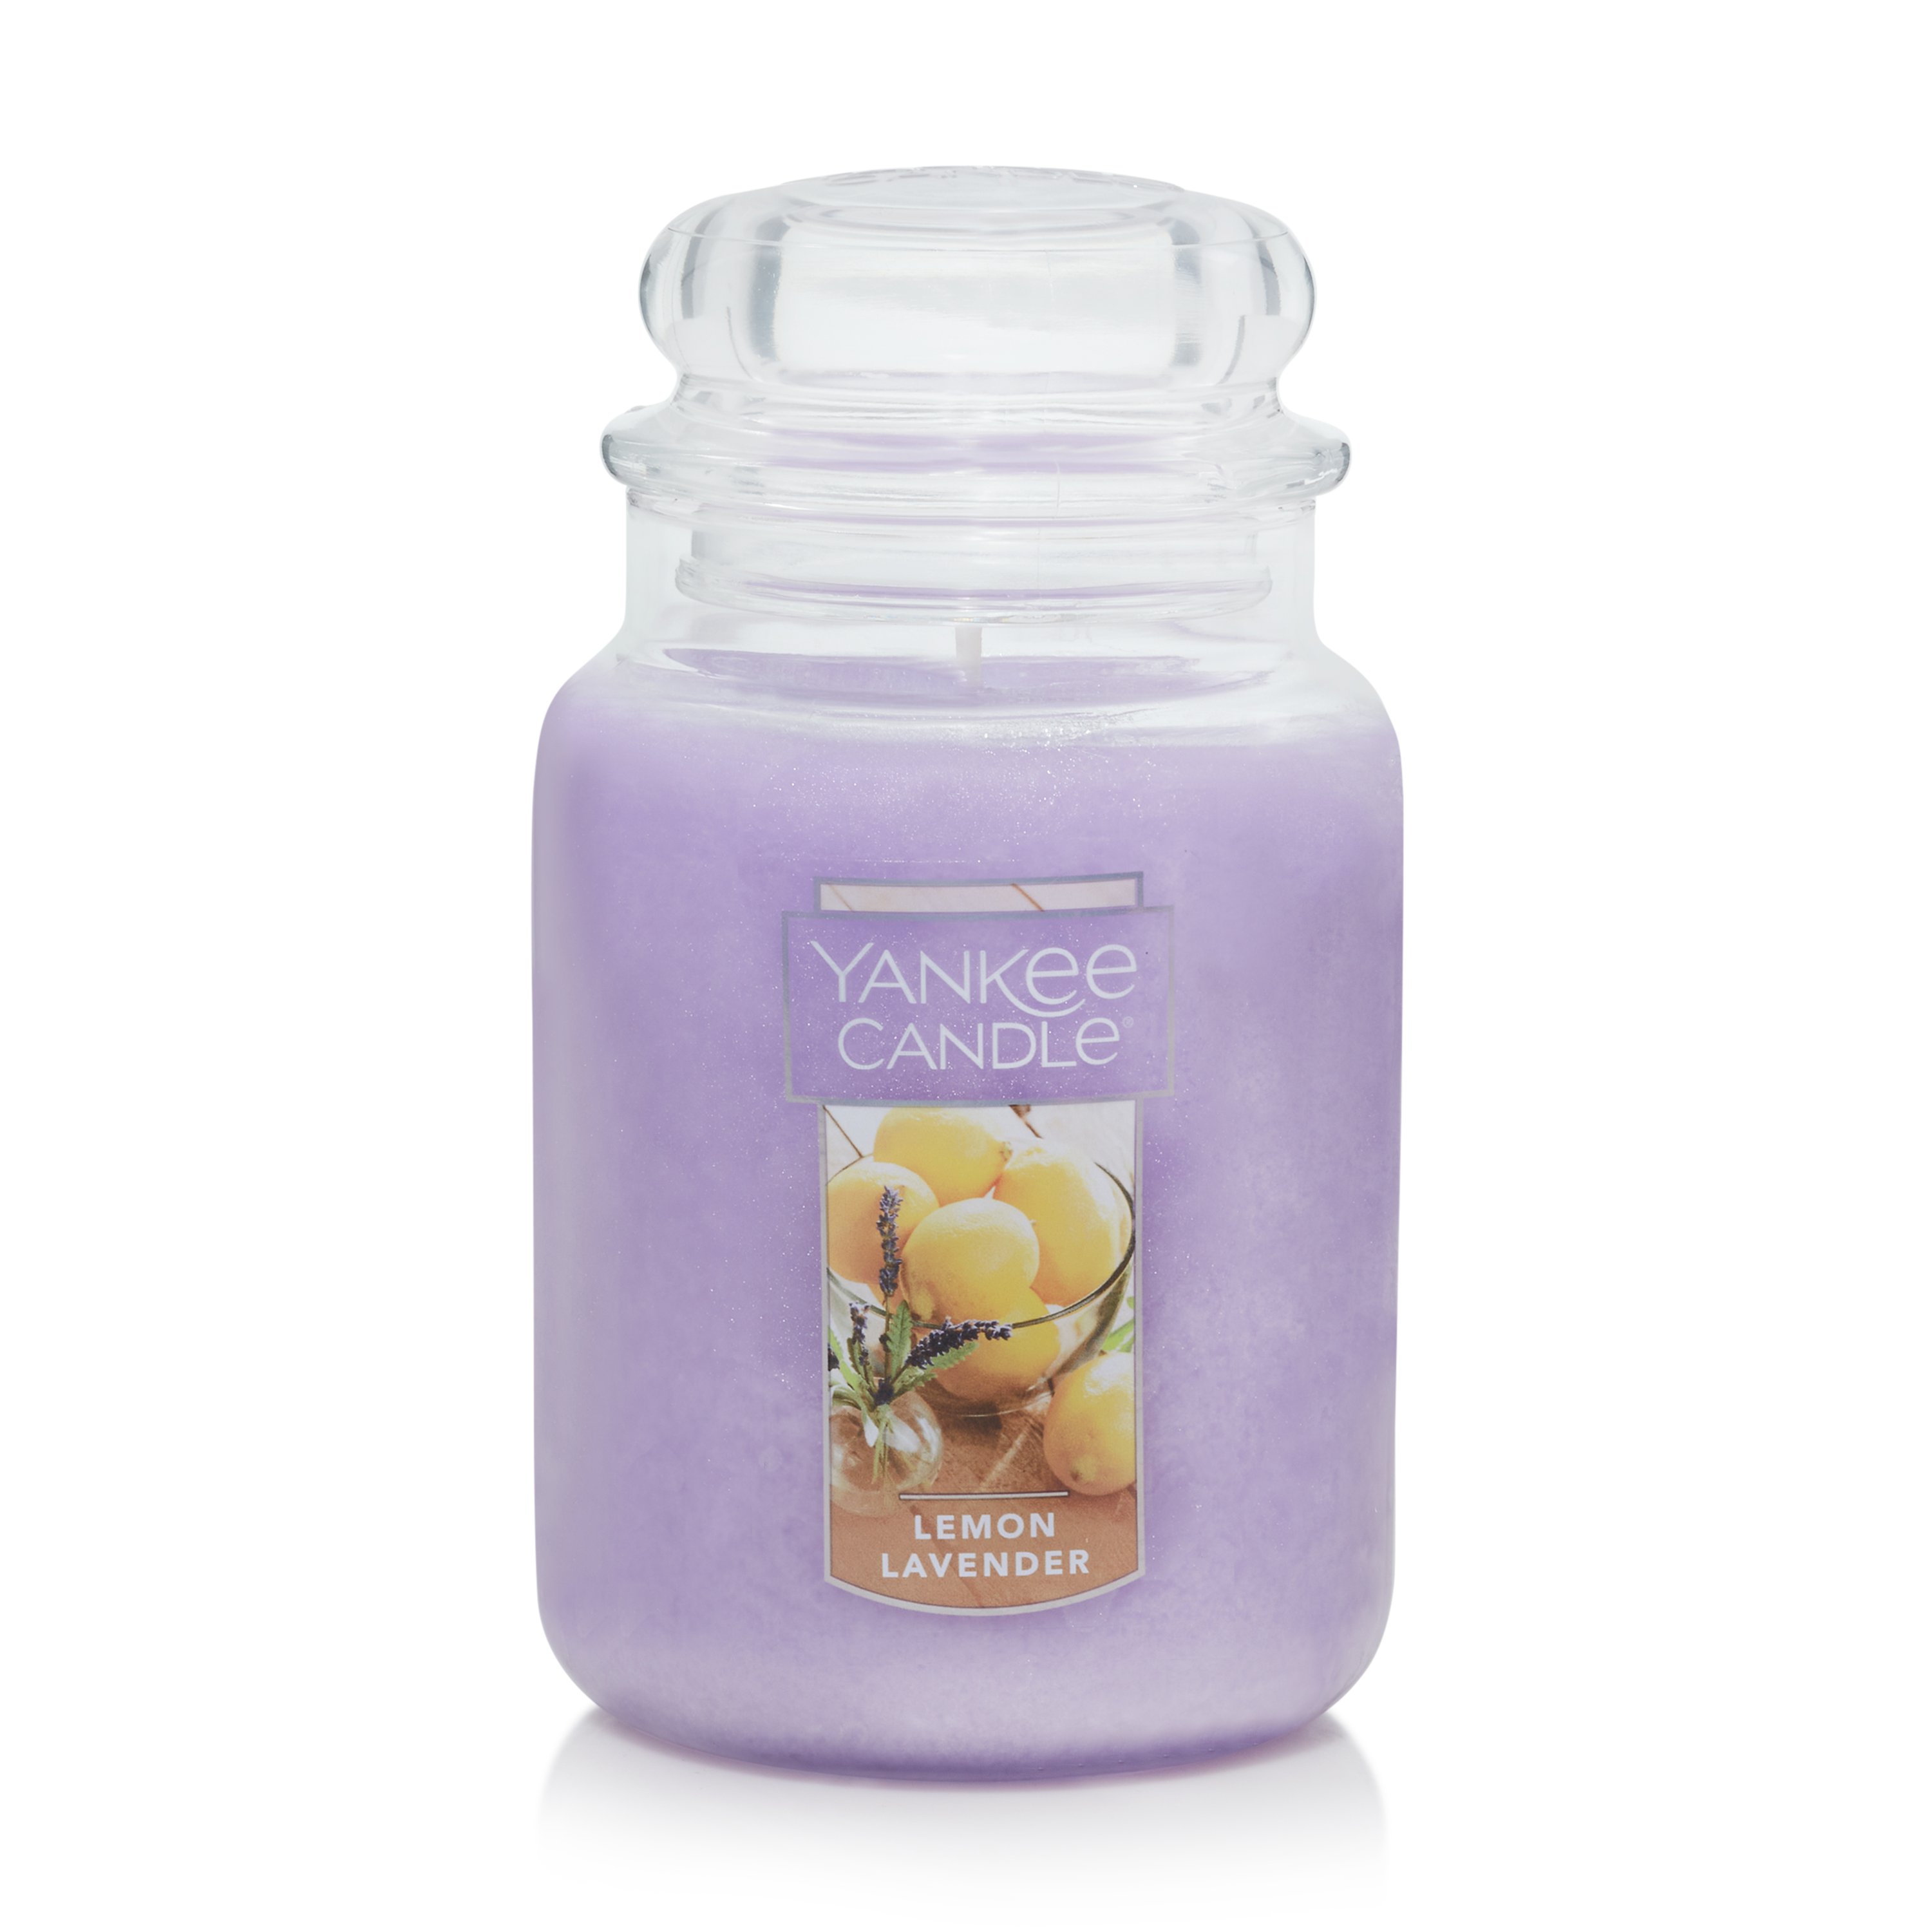 Lemon Lavender Candle